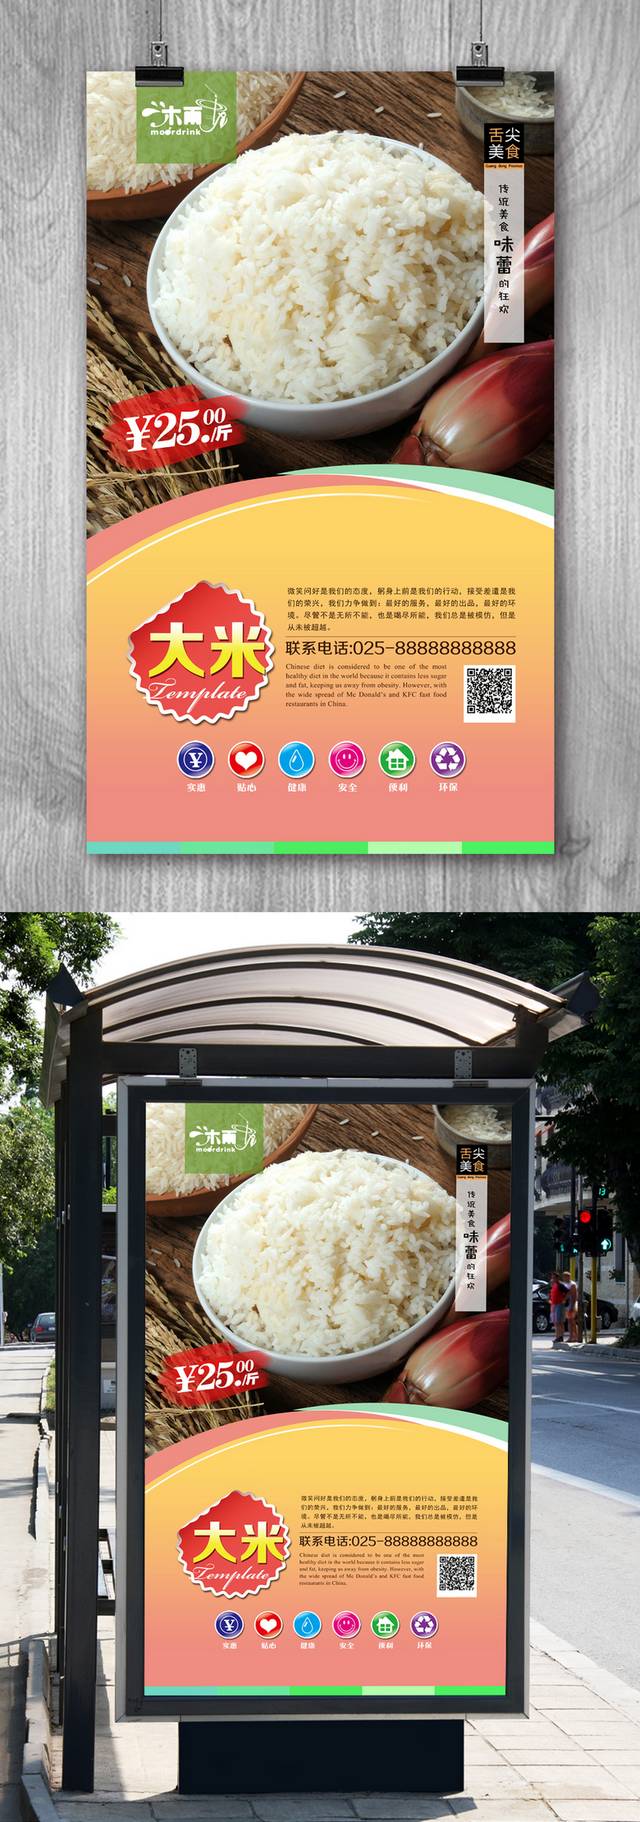 高清大米美食促销海报